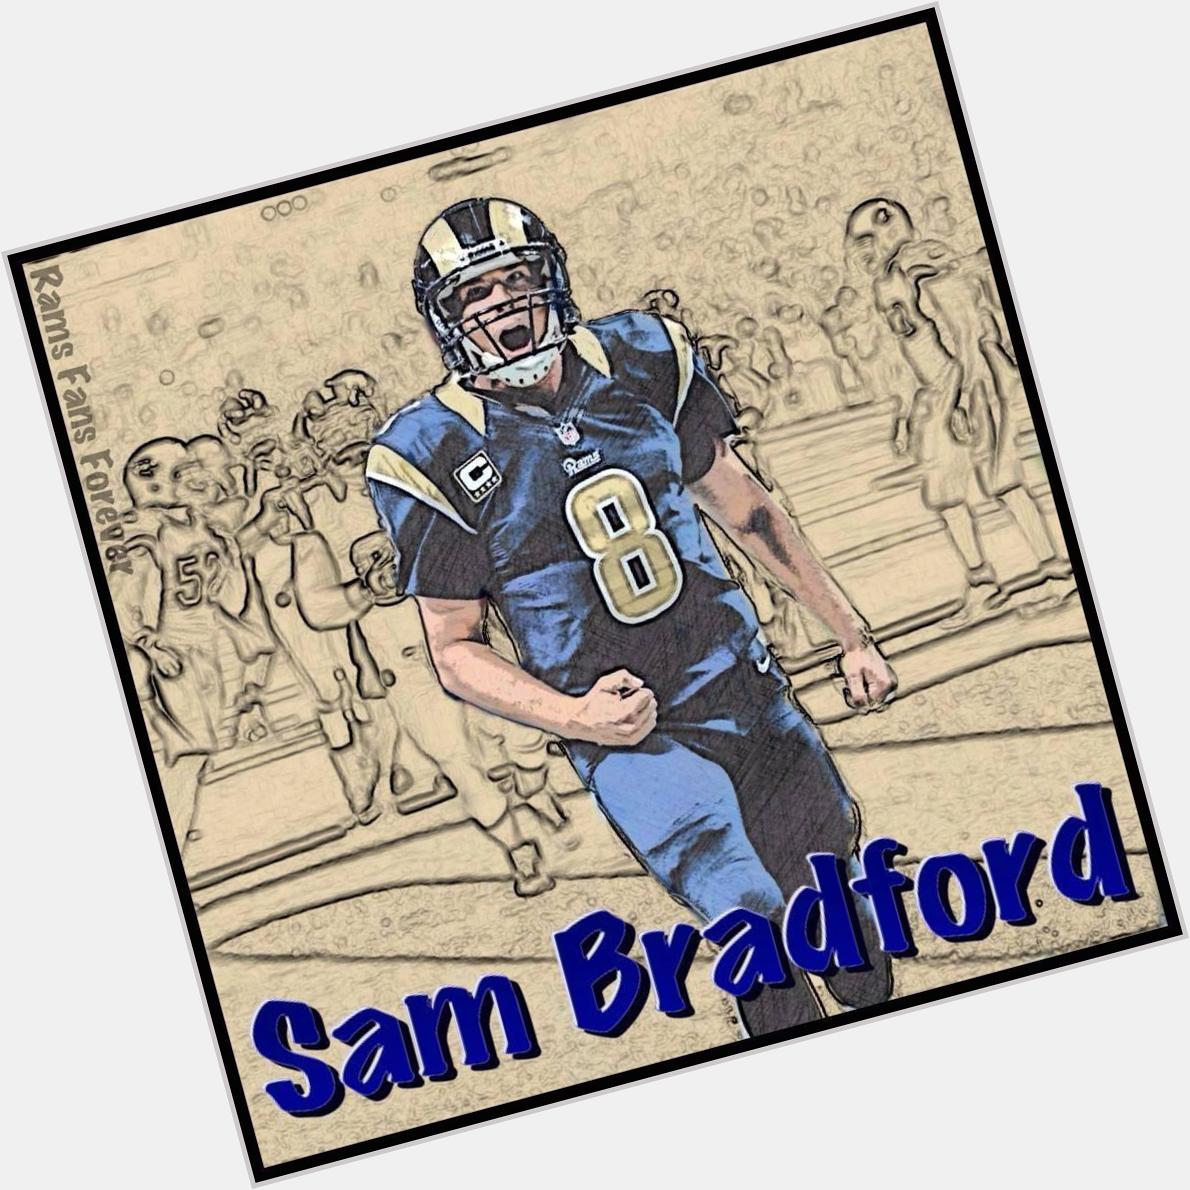  Happy Birthday Sam Bradford!!! 